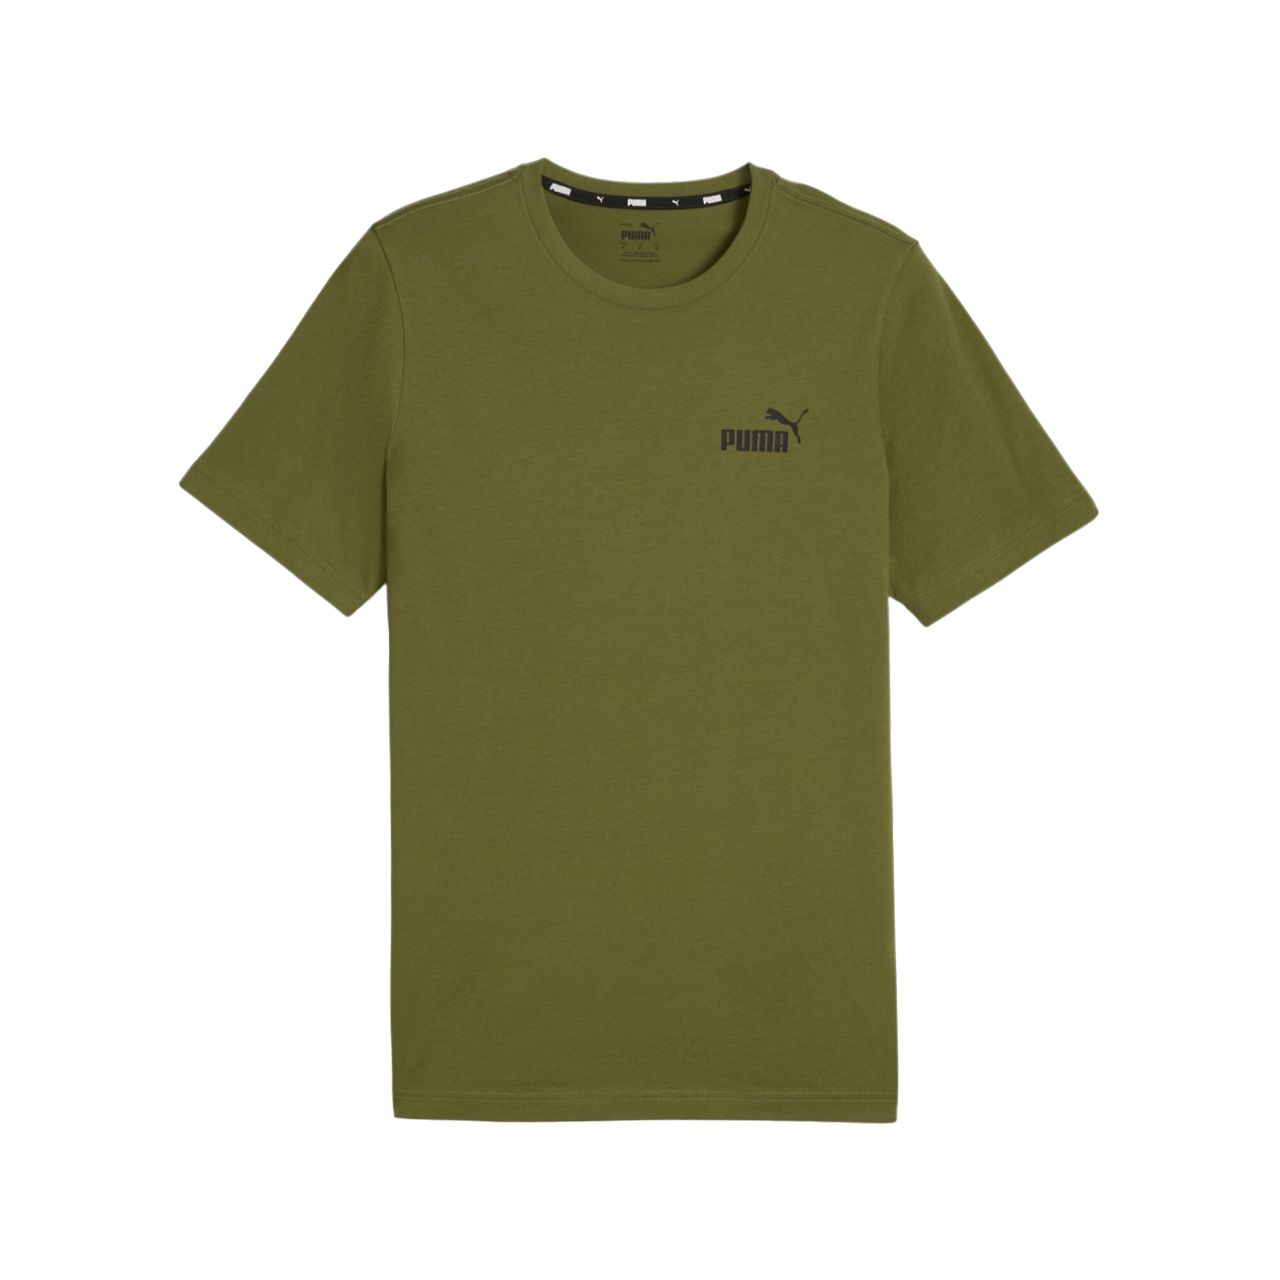 Puma maglietta manica corta da uomo con stampa logo piccolo ESS 586669-76 verde oliva